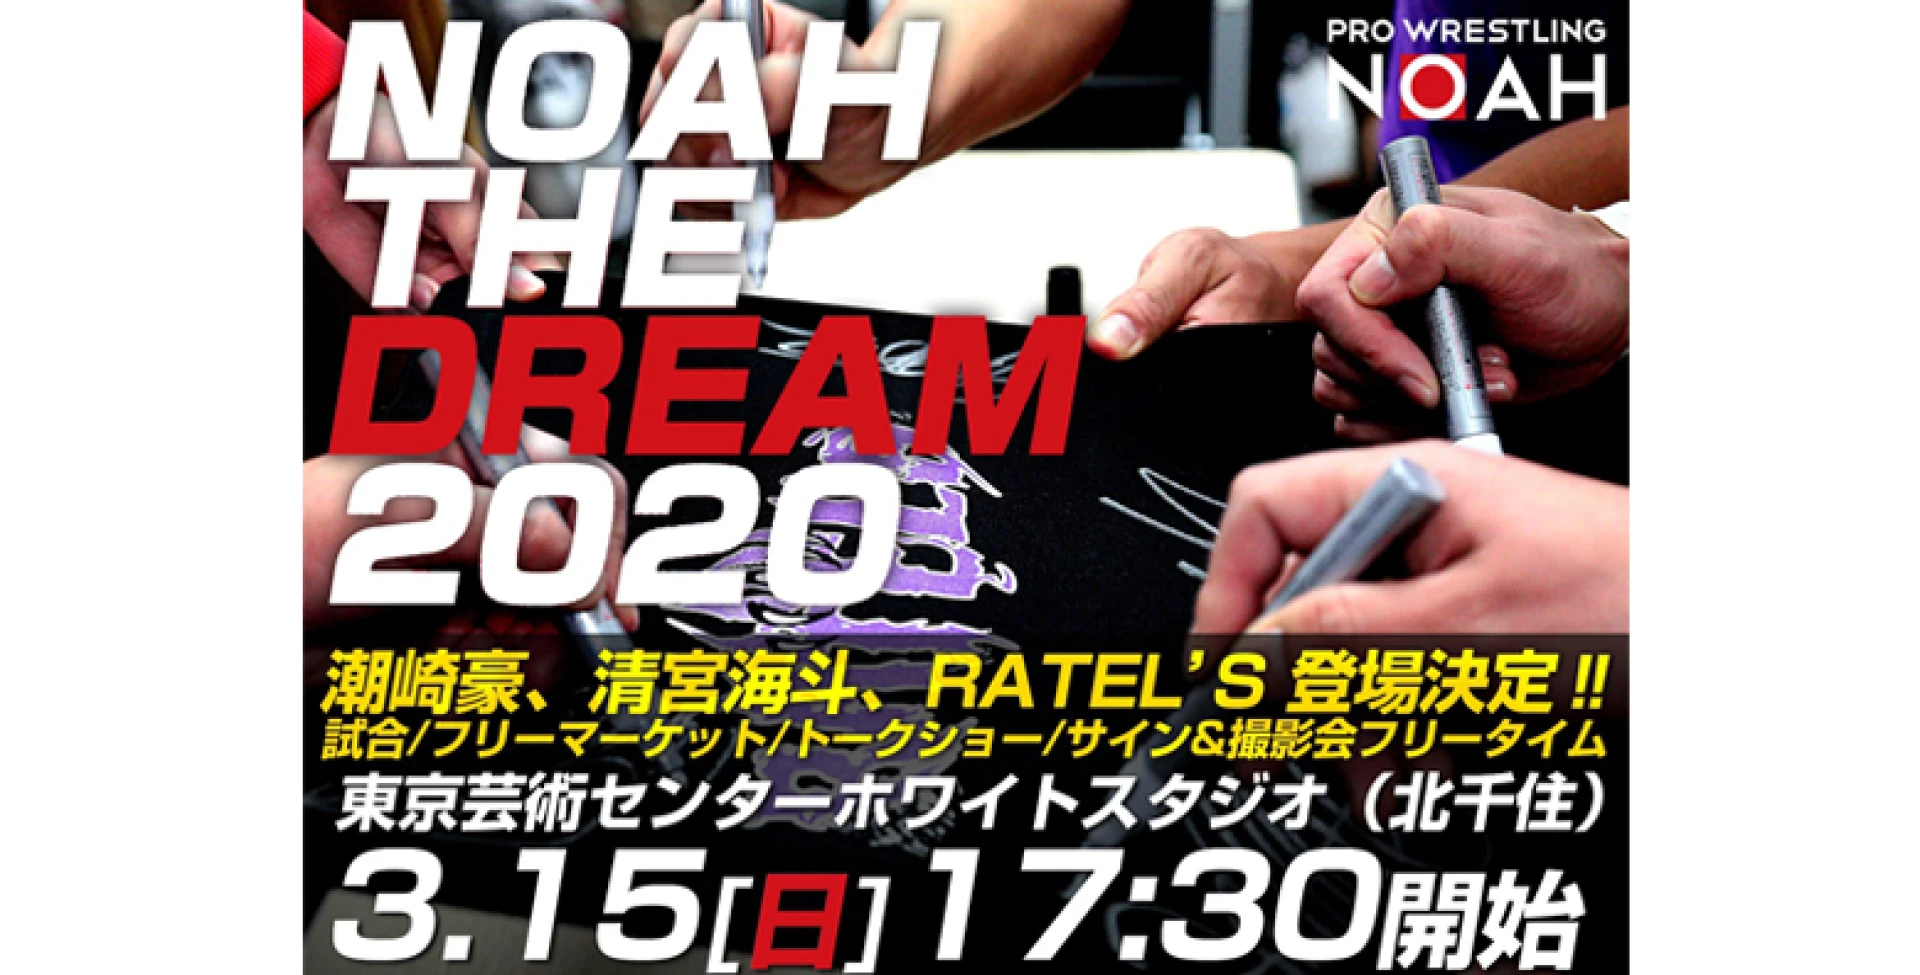 【FC会員チケット受付中!】NOAH THE DREAM 2020 開催のお知らせ【一般発売は2/16より】